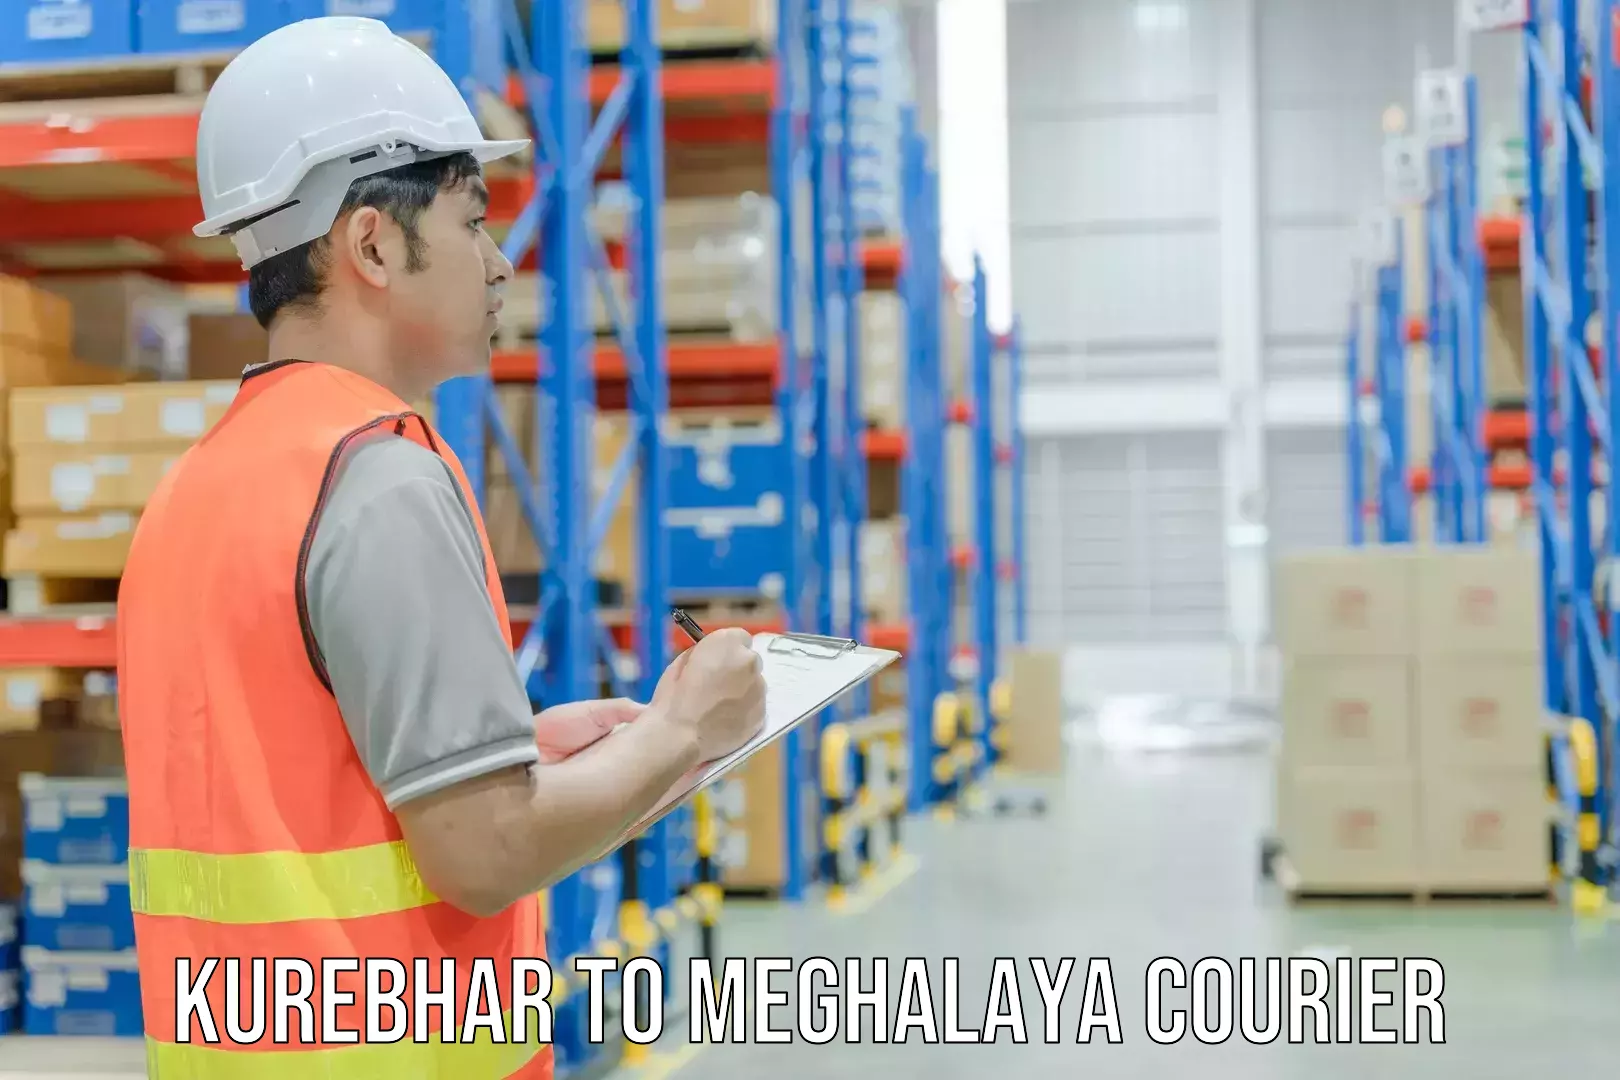 Professional courier handling Kurebhar to Meghalaya